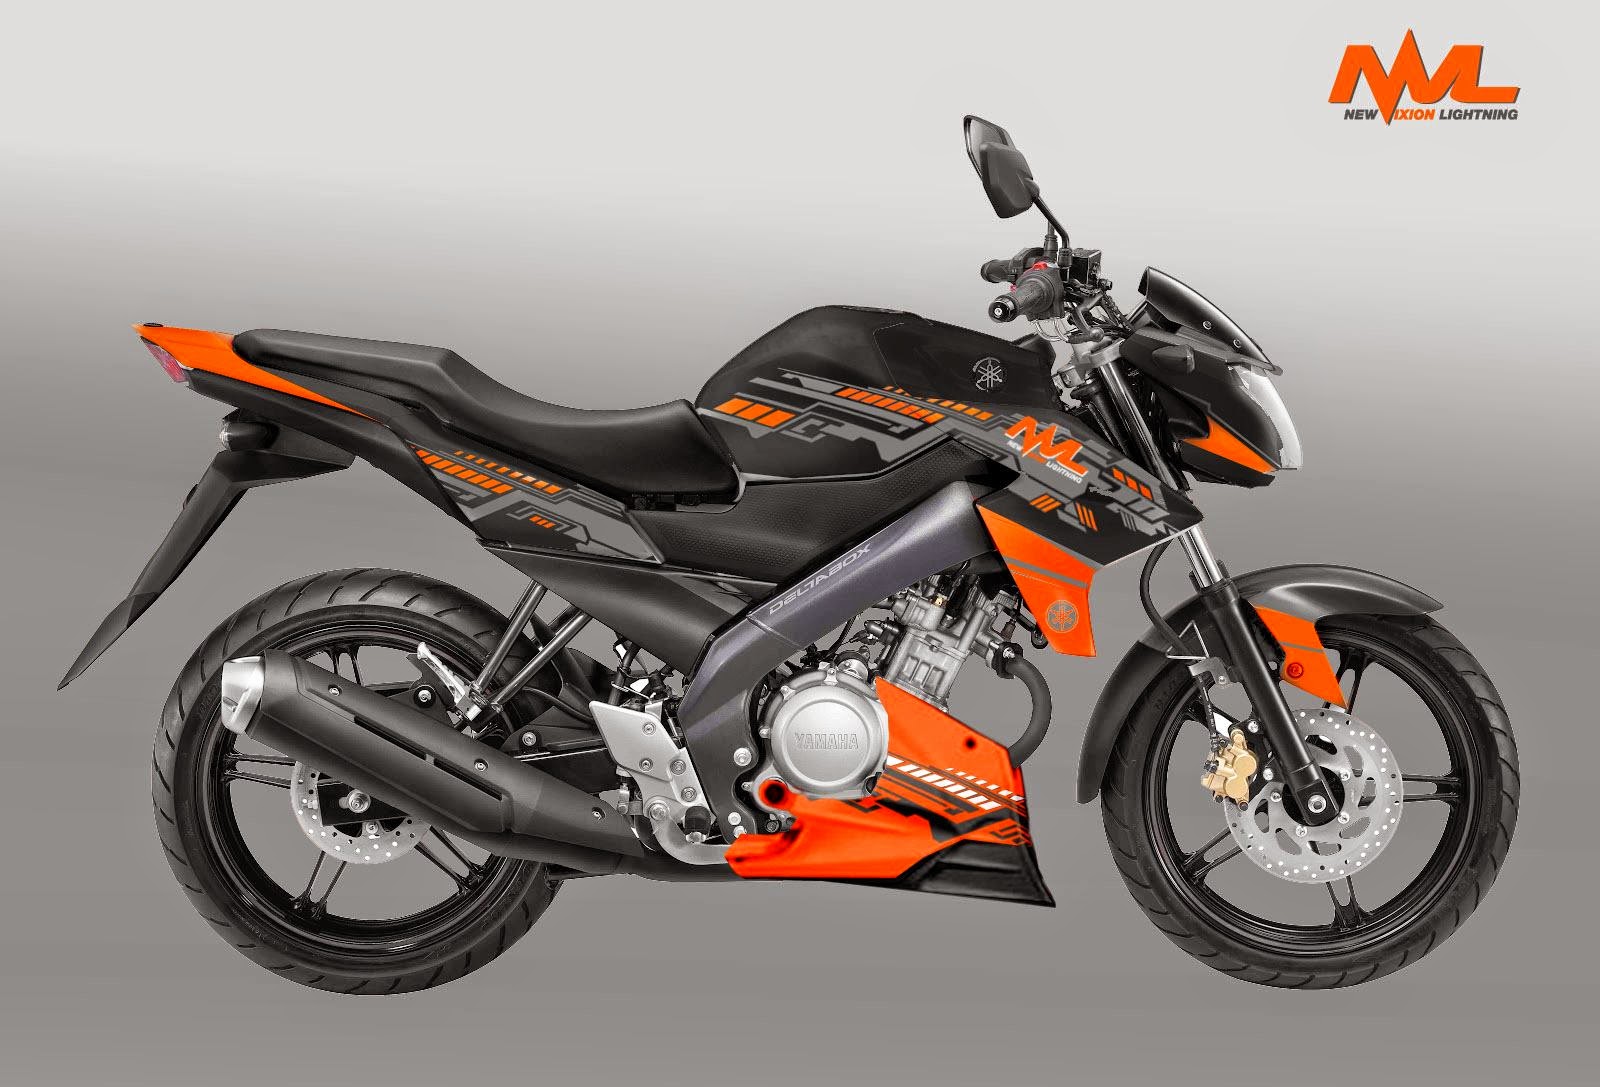 Koleksi Ide Modifikasi Motor Touring Yamaha Vixion Terlengkap